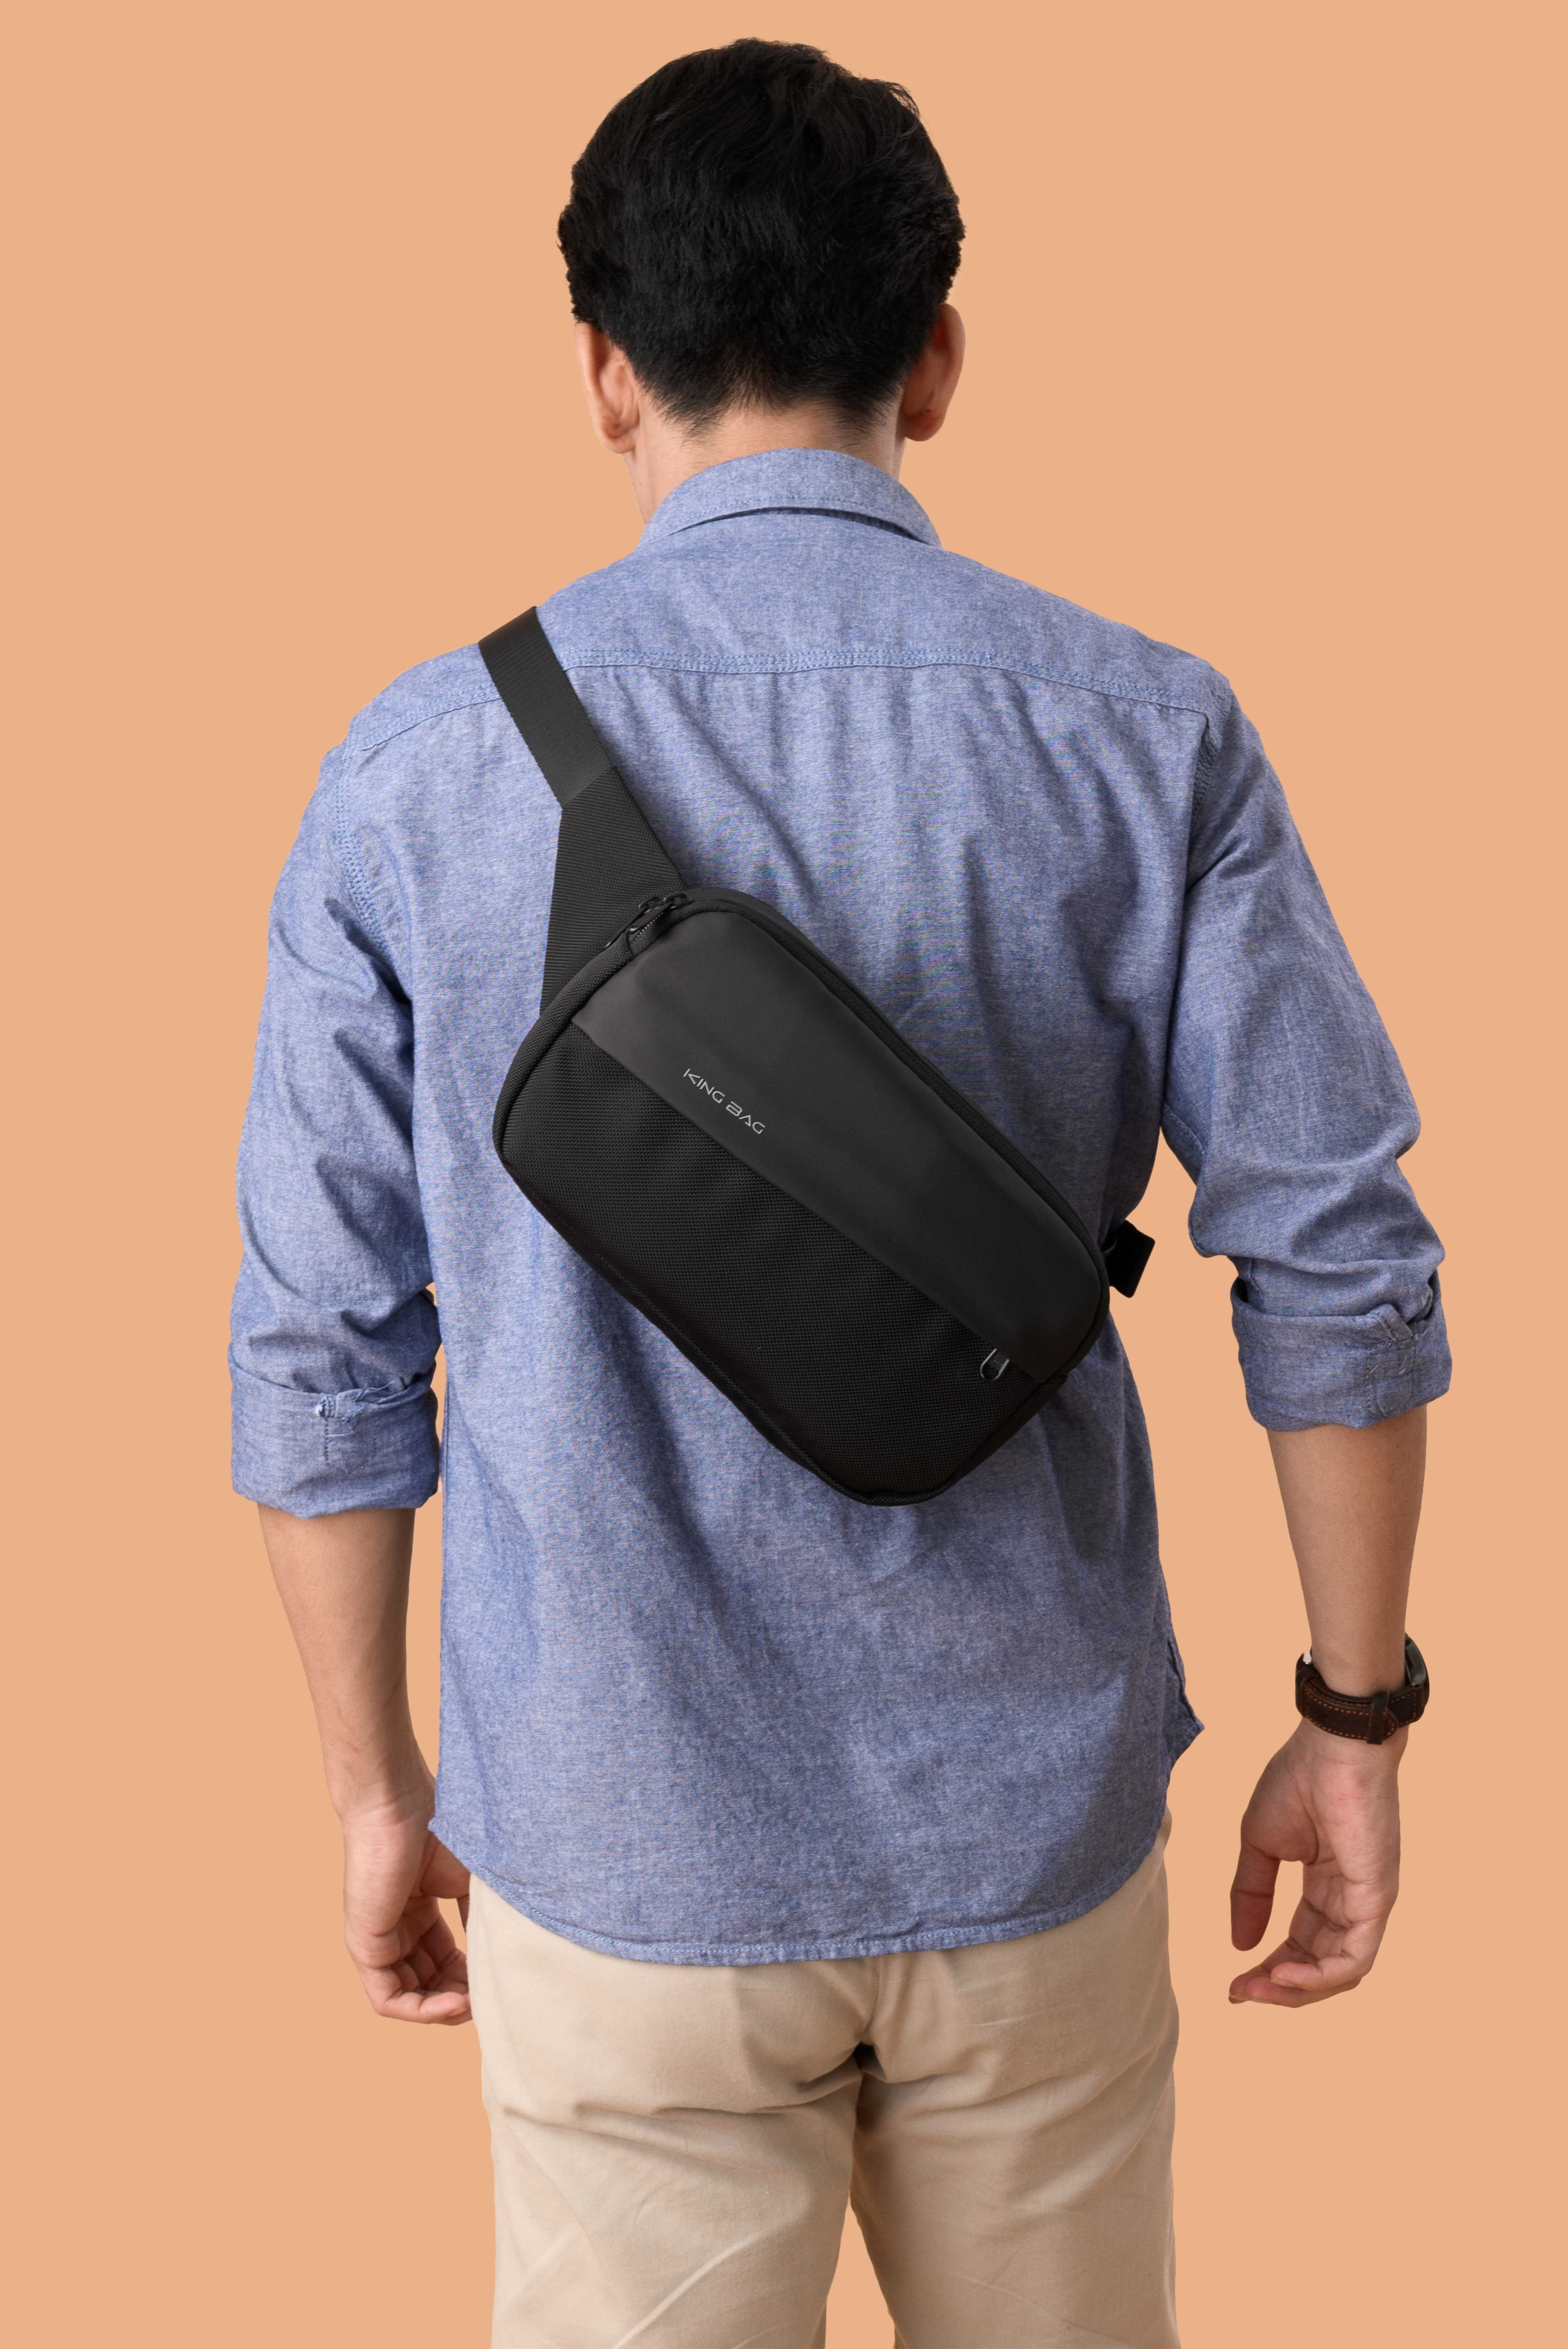 Túi đeo chéo thời trang KINGBAG BAMBOO nhiều ngăn, vải kháng nước tốt, khóa YKK, màu đen - Hàng chính hãng